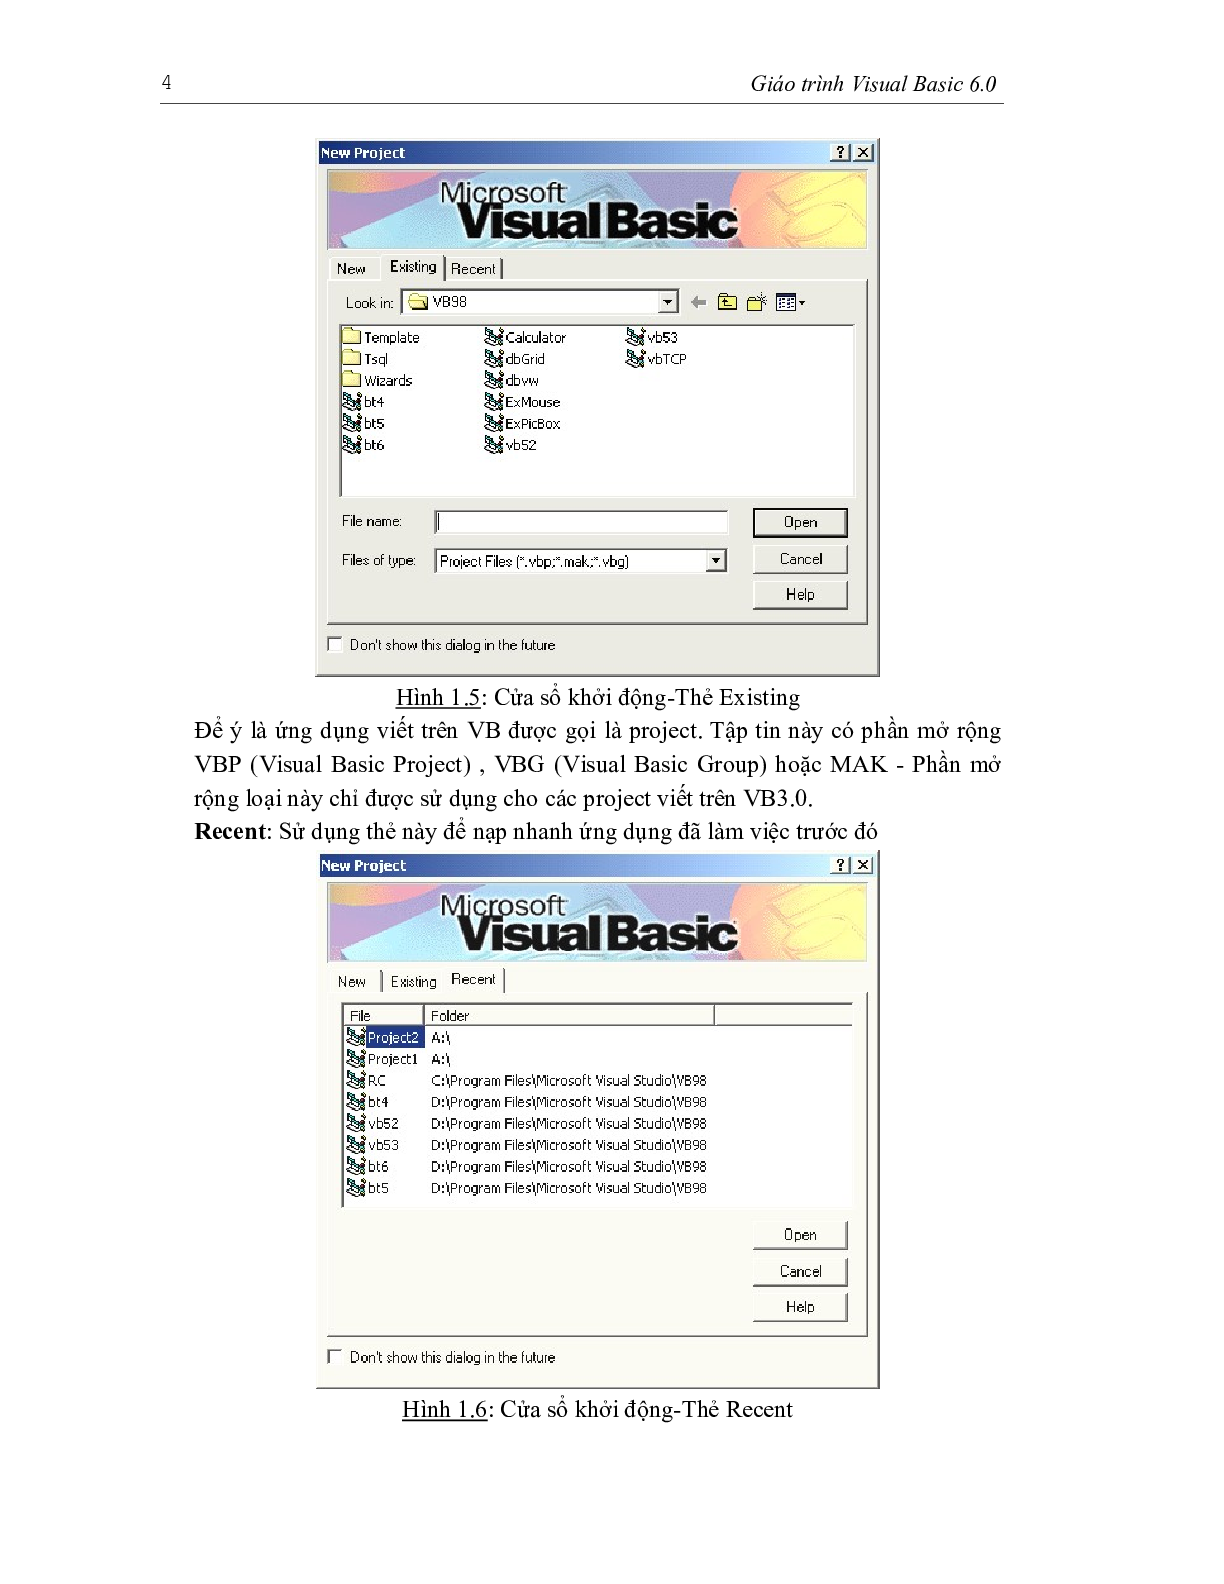 Giáo trình Visual basic 6.0 | Trường Đại học Sư phạm Kỹ thuật Thành phố Hồ Chí Minh (trang 5)